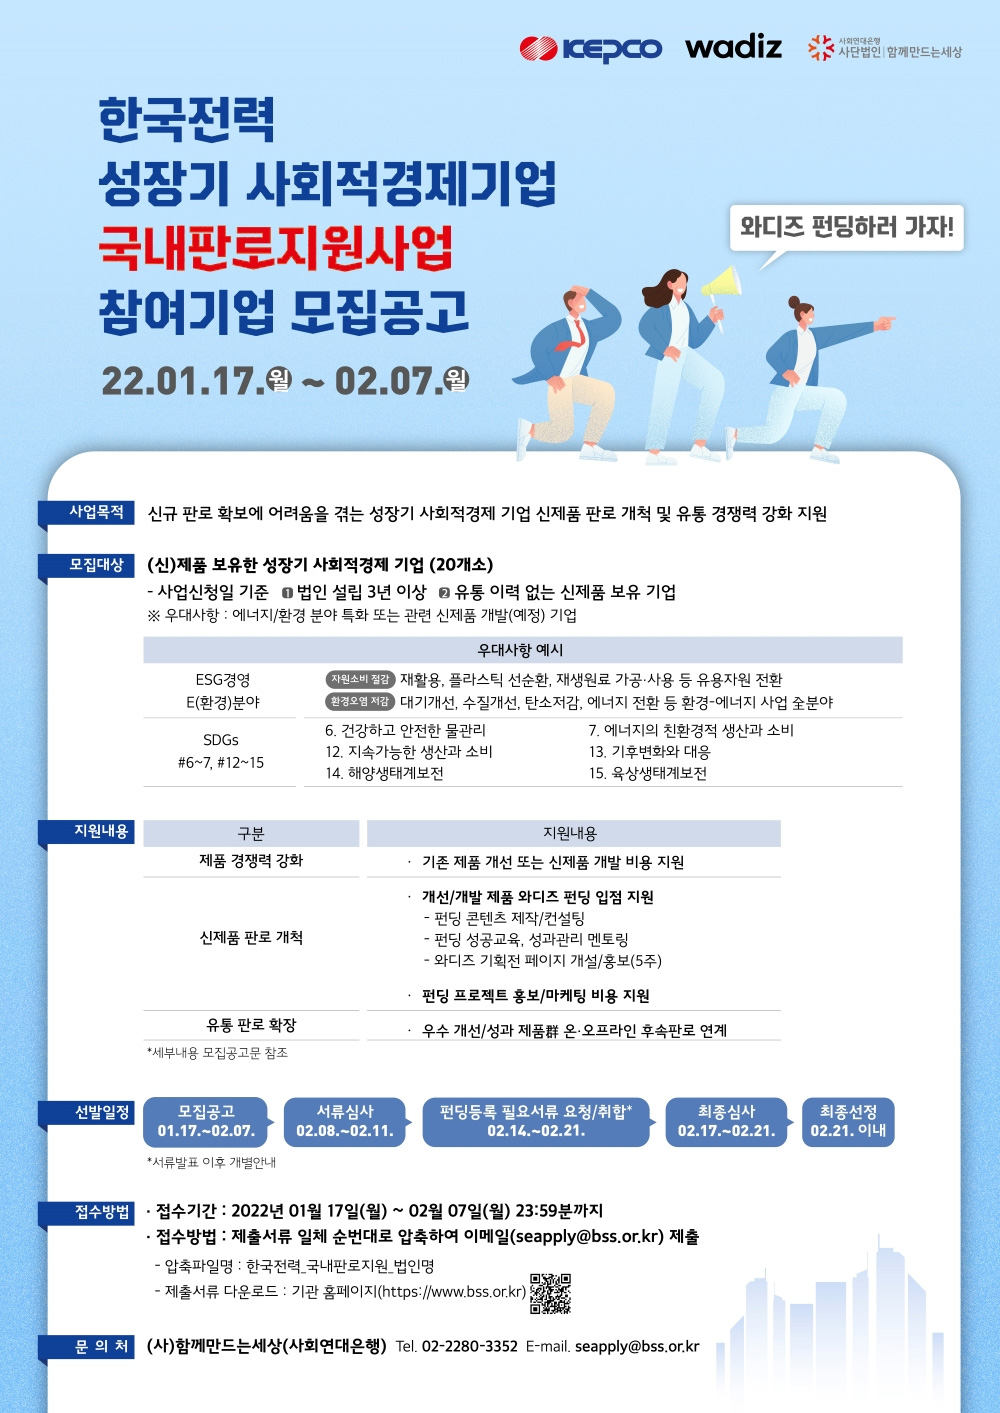 한국전력 성장기 사회적경제기업 국내판로지원사업 참여기업 모집공고